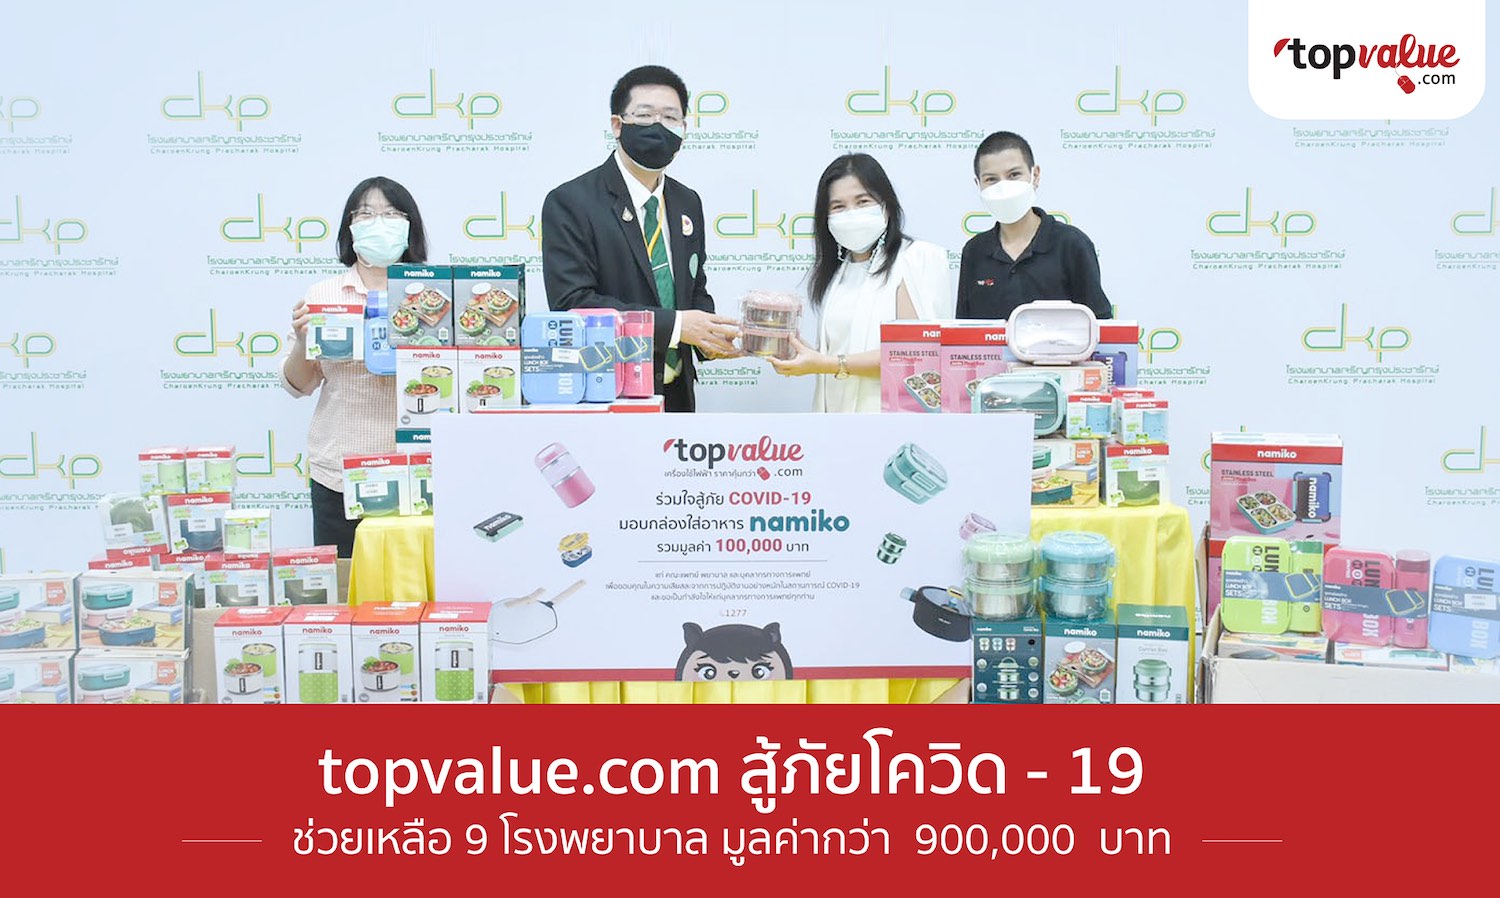 Topvalue สู้ภัยโควิด19 ช่วยเหลือ 9 โรงพยาบาล มูลค่ากว่า 900,000 บาท